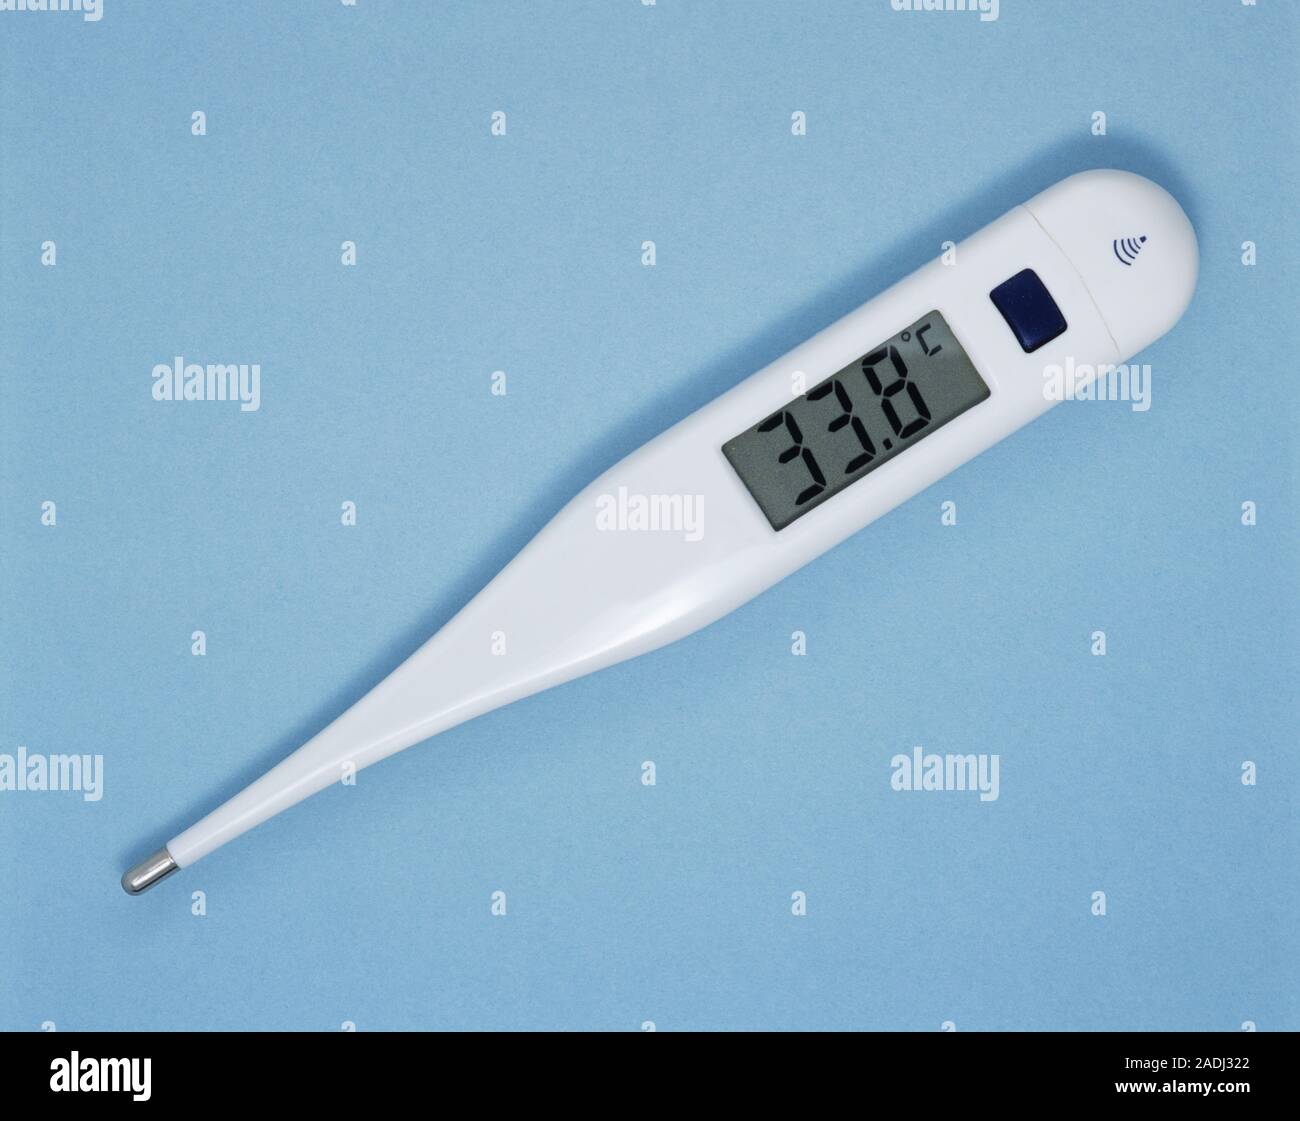 L'hypothermie. Thermomètre numérique montrant une baisse de température de  33,8 degrés Celsius. Ceci indique l'hypothermie. Les résultats de l' Hypothermie insuffic Photo Stock - Alamy